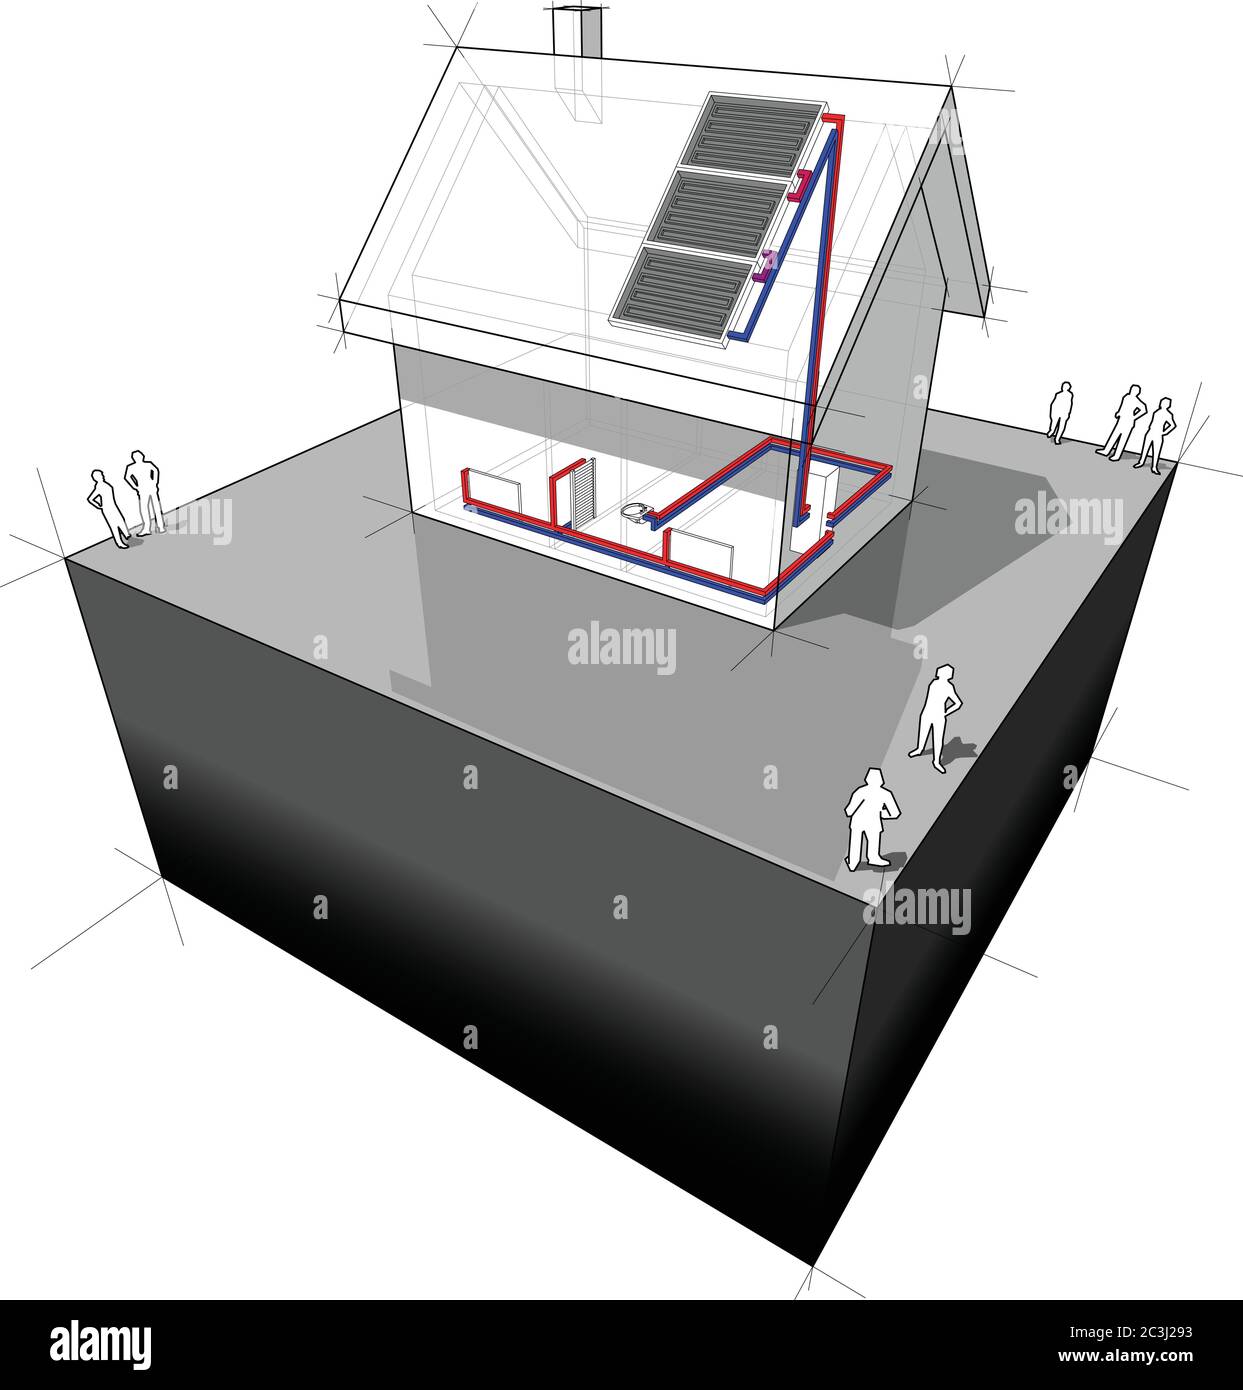 schema di una semplice casa indipendente riscaldata da pannelli solari sul tetto e radiatori Illustrazione Vettoriale